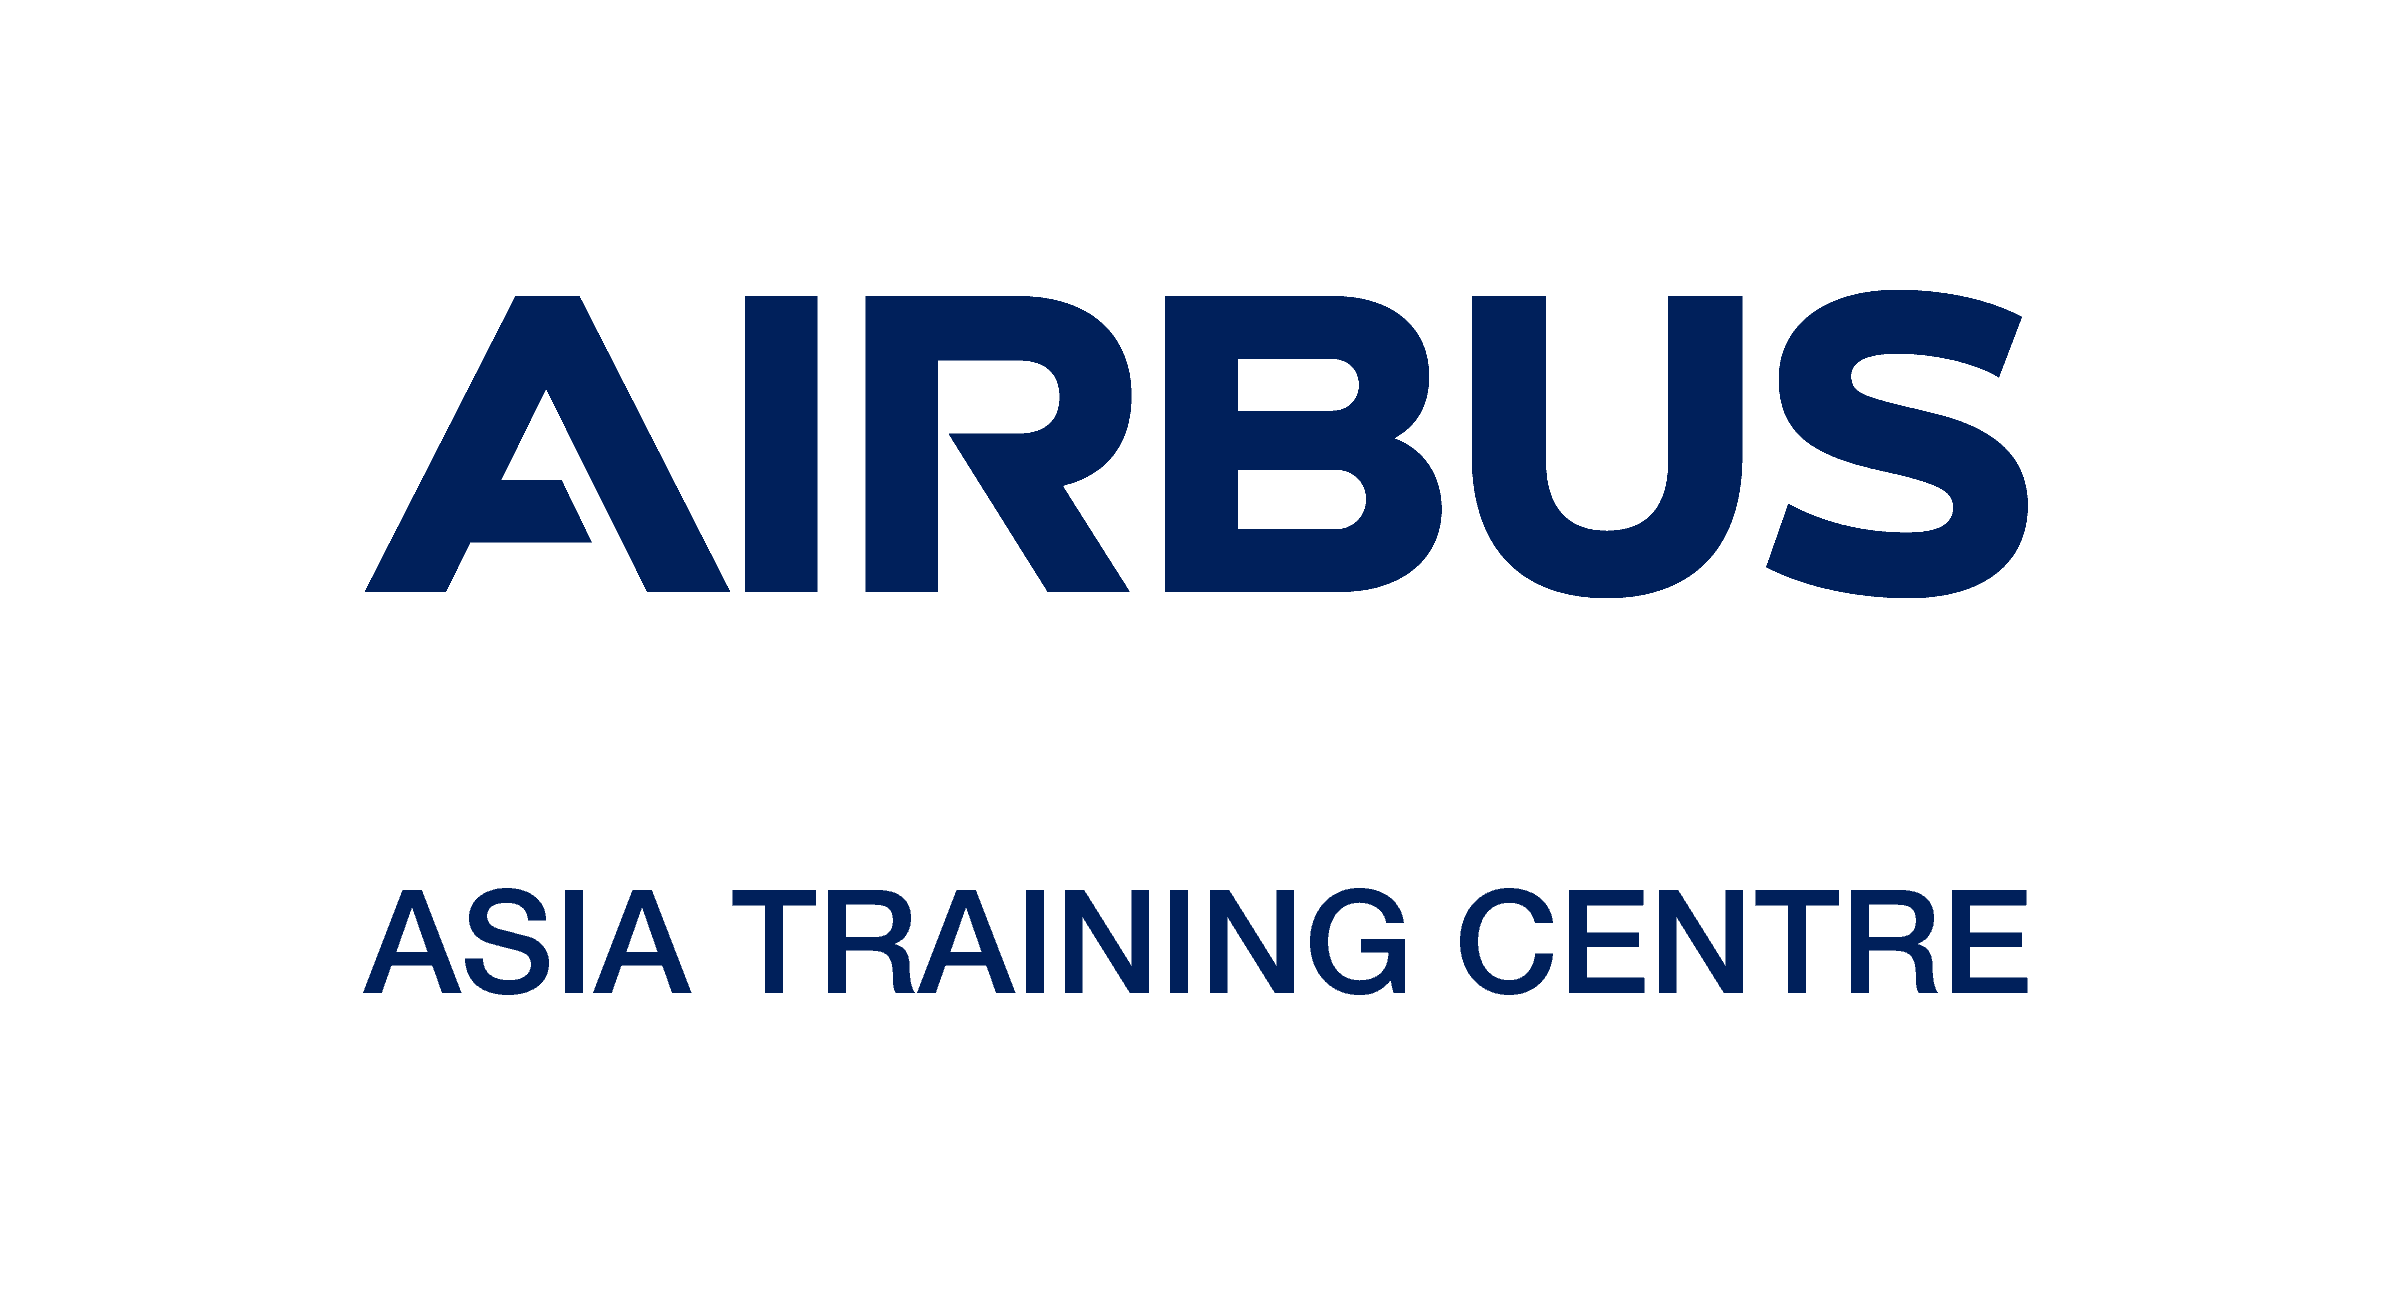 Blue Asia Logo - Airbus Asia Training Centre - Asia Pacific Airline Training Summit